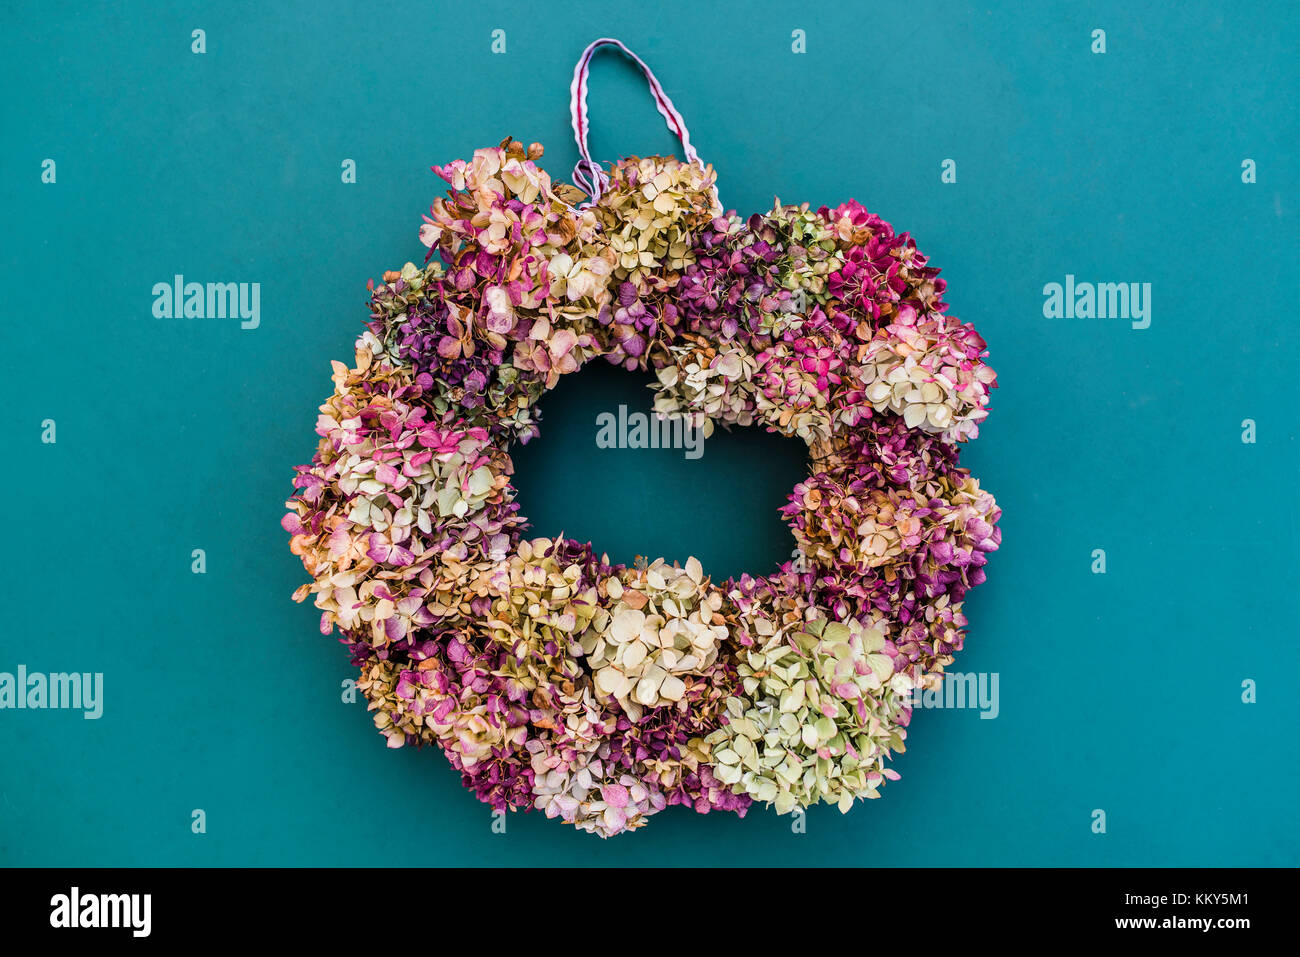 Immer noch leben, herbstliche Dekoration, Kranz mit Hortensien Blüten Stockfoto